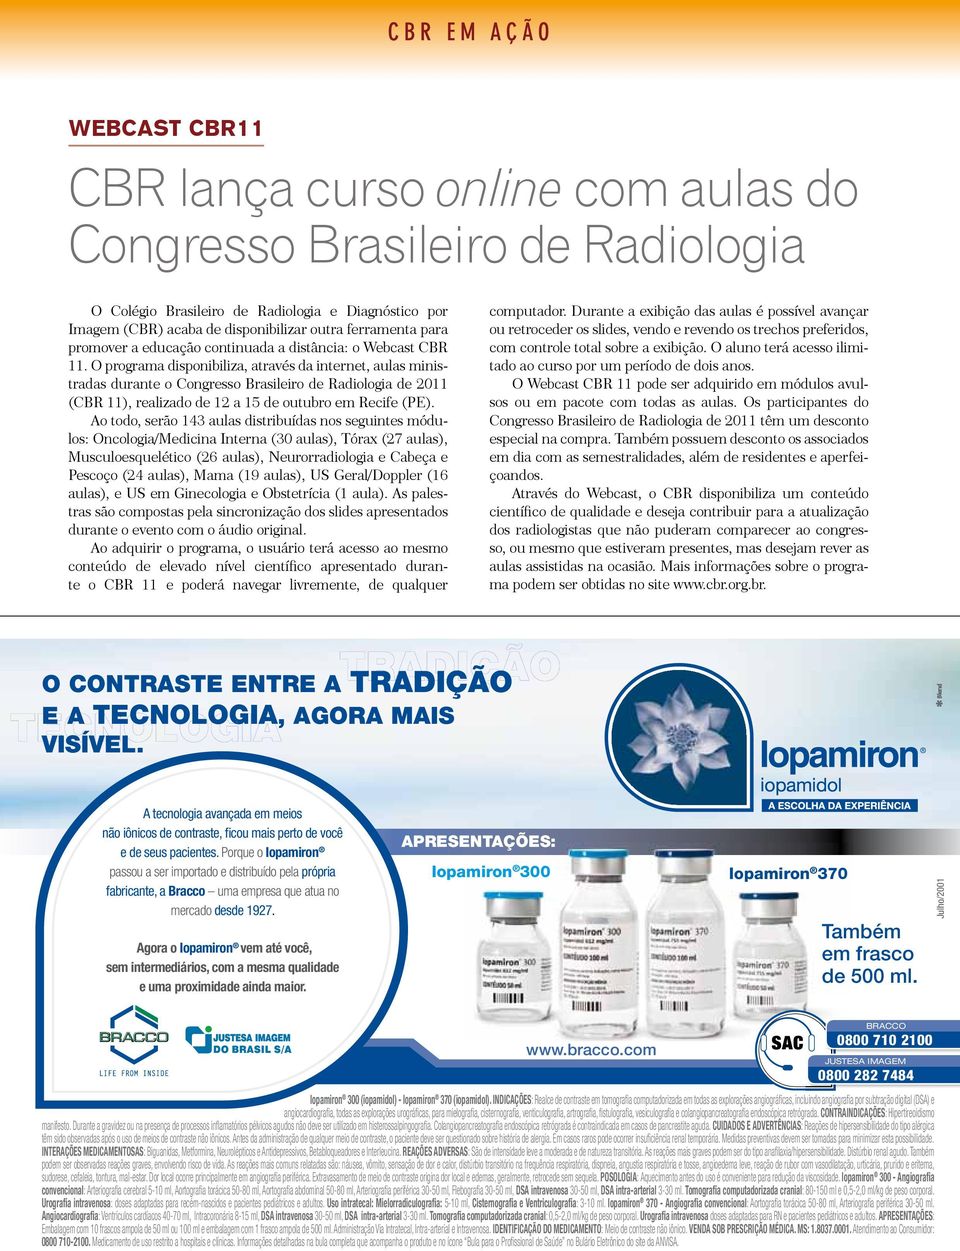 O programa disponibiliza, através da internet, aulas ministradas durante o Congresso Brasileiro de Radiologia de 2011 (CBR 11), realizado de 12 a 15 de outubro em Recife (PE).